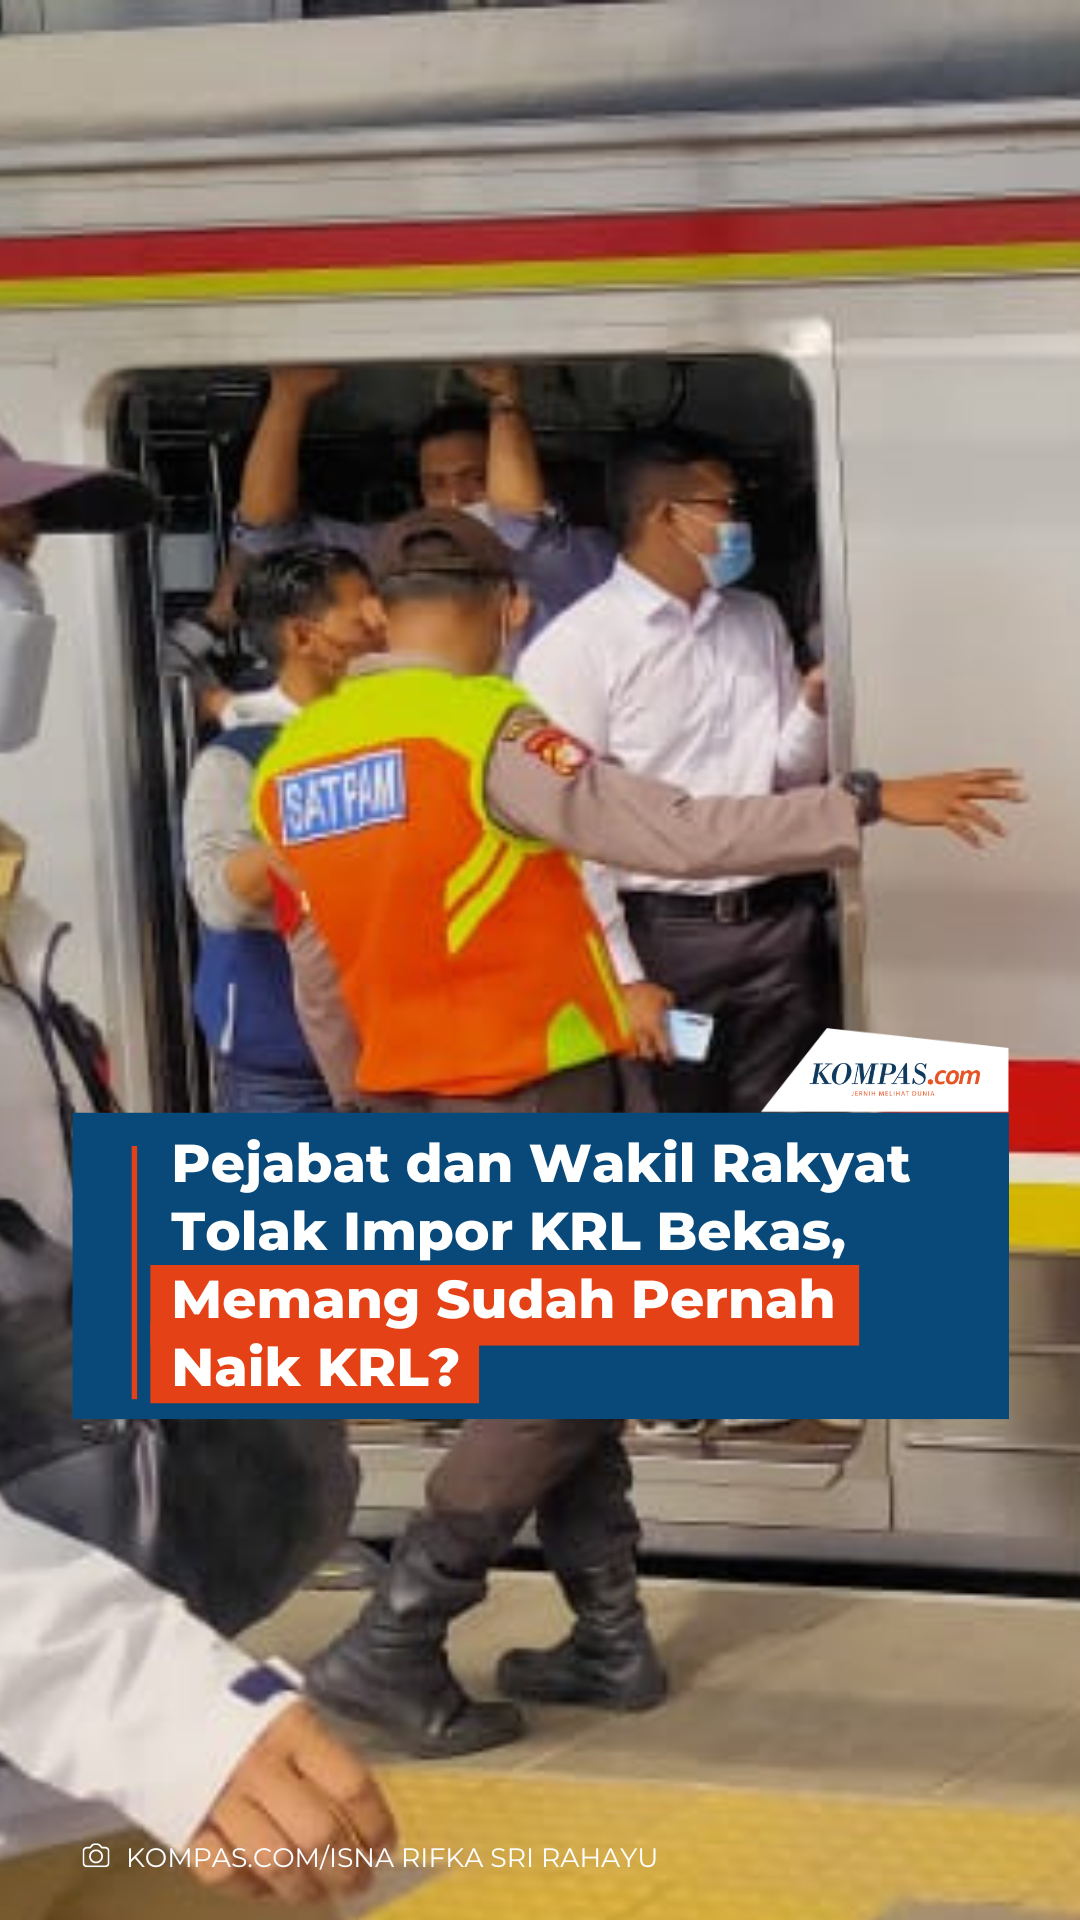 Pejabat dan Wakil Rakyat Tolak Impor KRL Bekas, Memang Sudah Pernah Naik KRL?